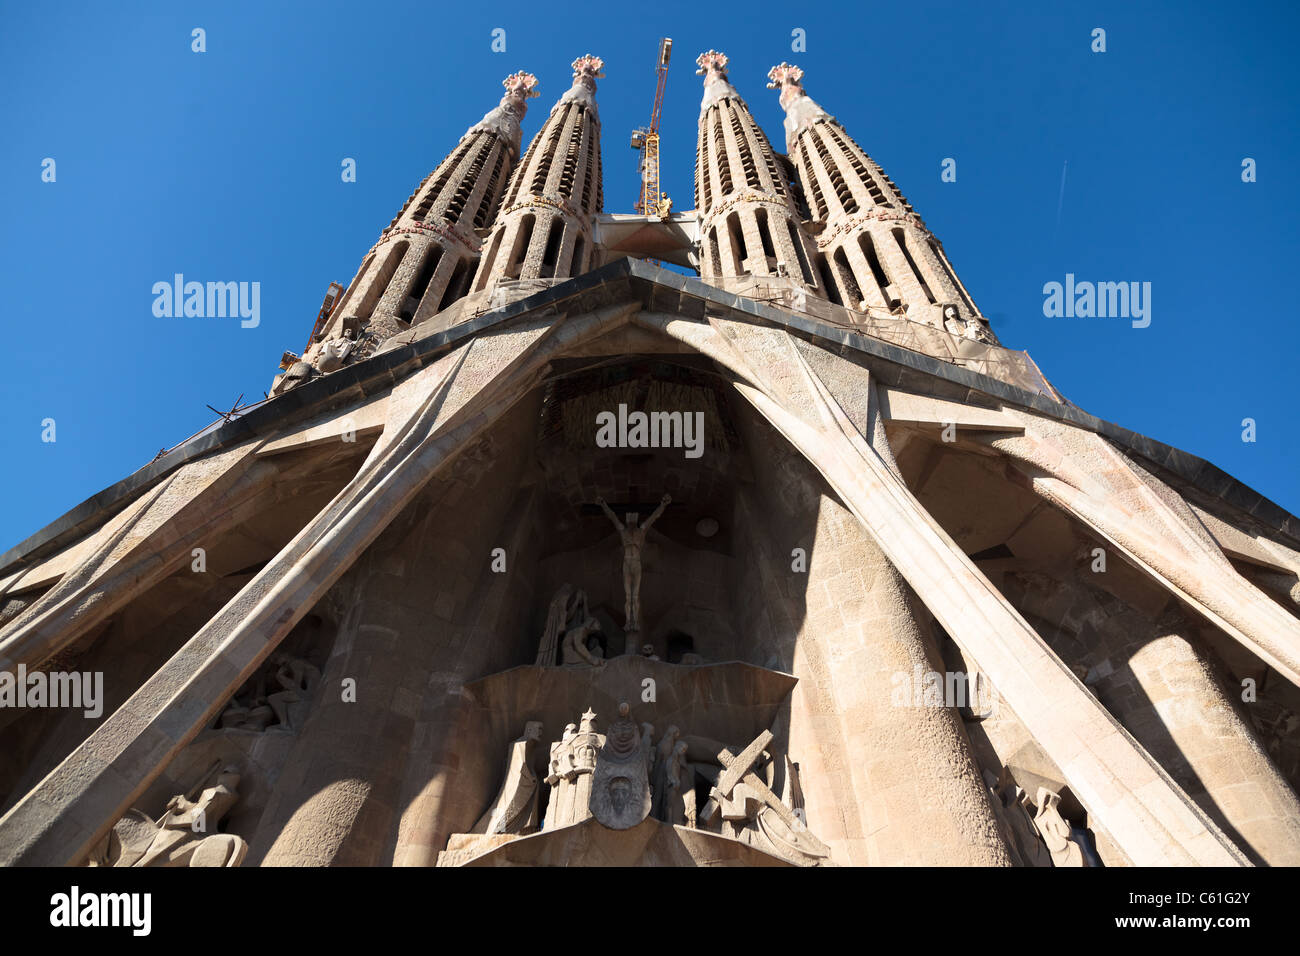 BARCELONA, España - 07 de julio: La Sagrada Familia - la impresionante catedral diseñada por Gaudí, que se construya desde 1882 y no ha terminado aún de Julio 07, 2011 en Barcelona, España. Foto de stock